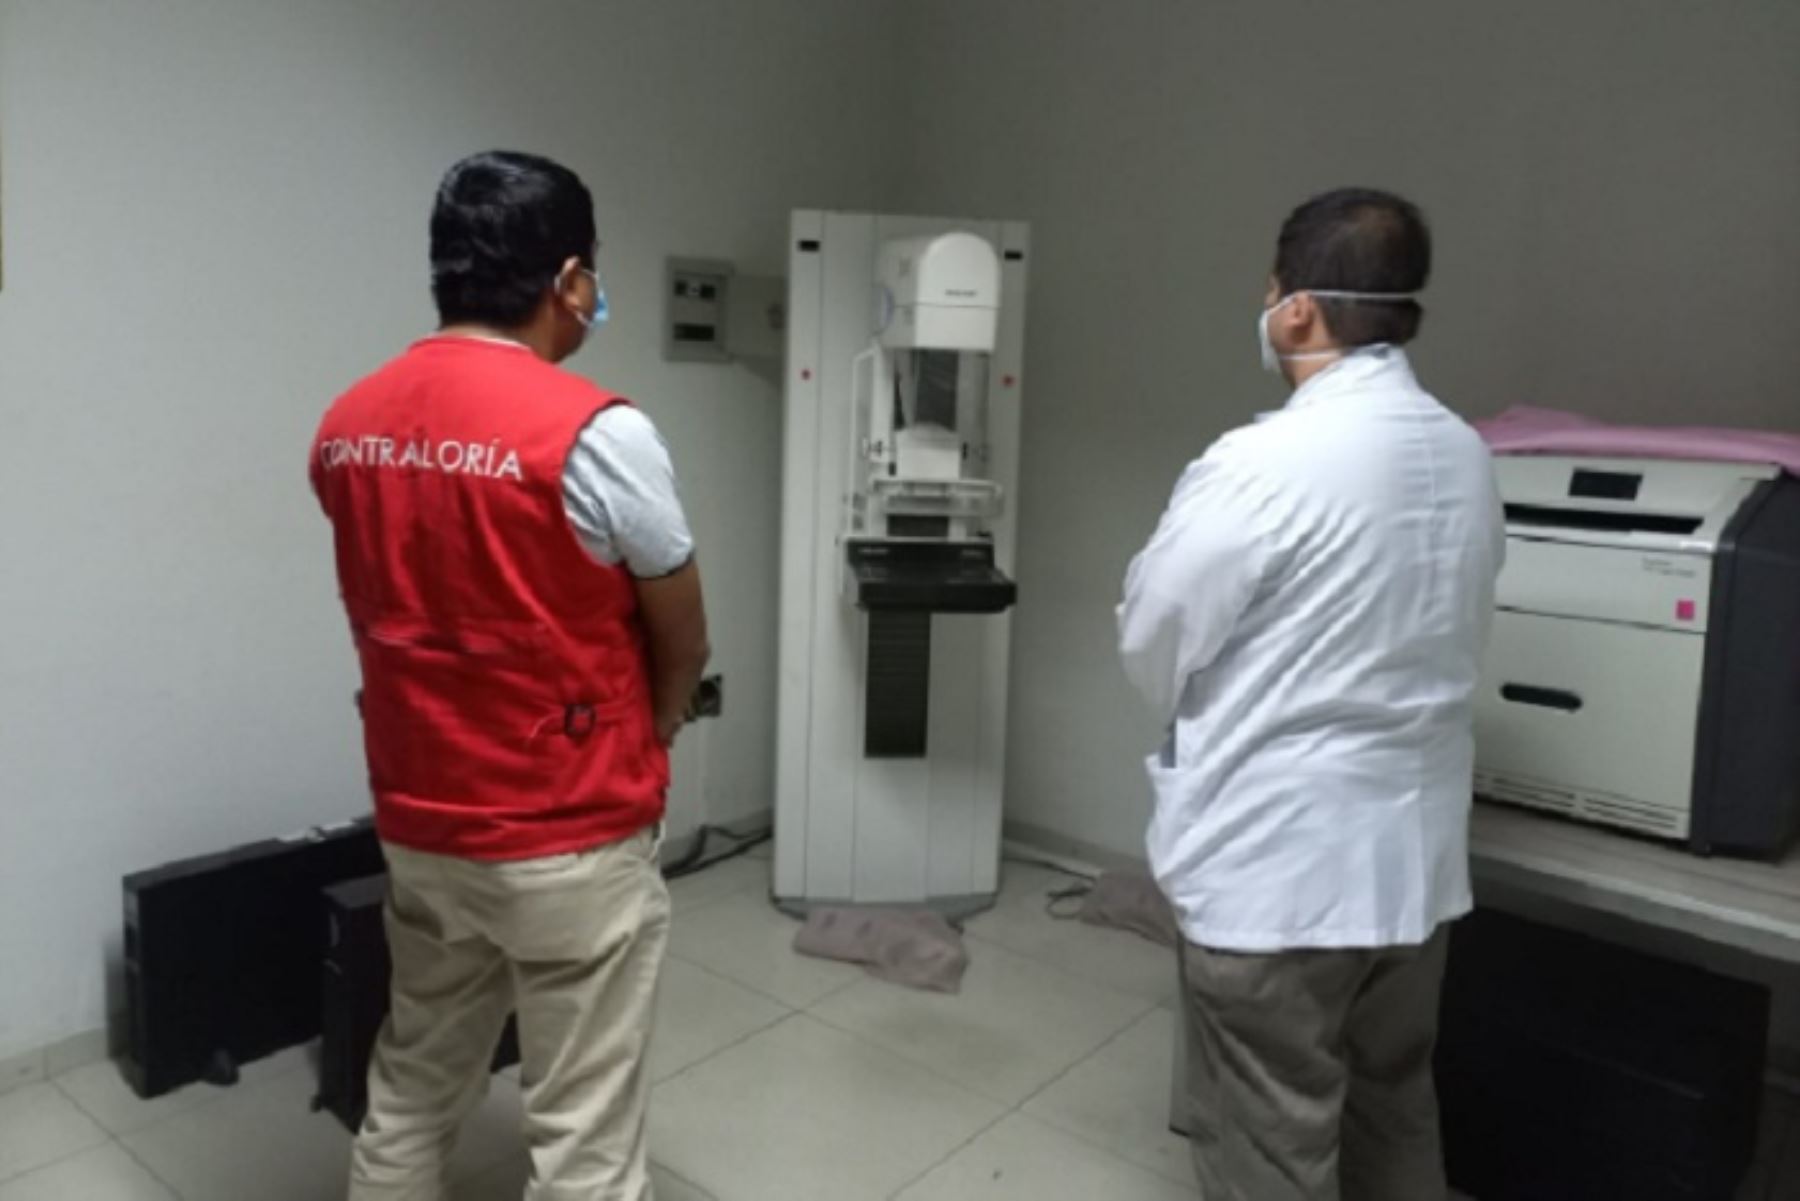 Contraloría advierte riesgos en atención médica del hospital Las Mercedes de Chiclayo